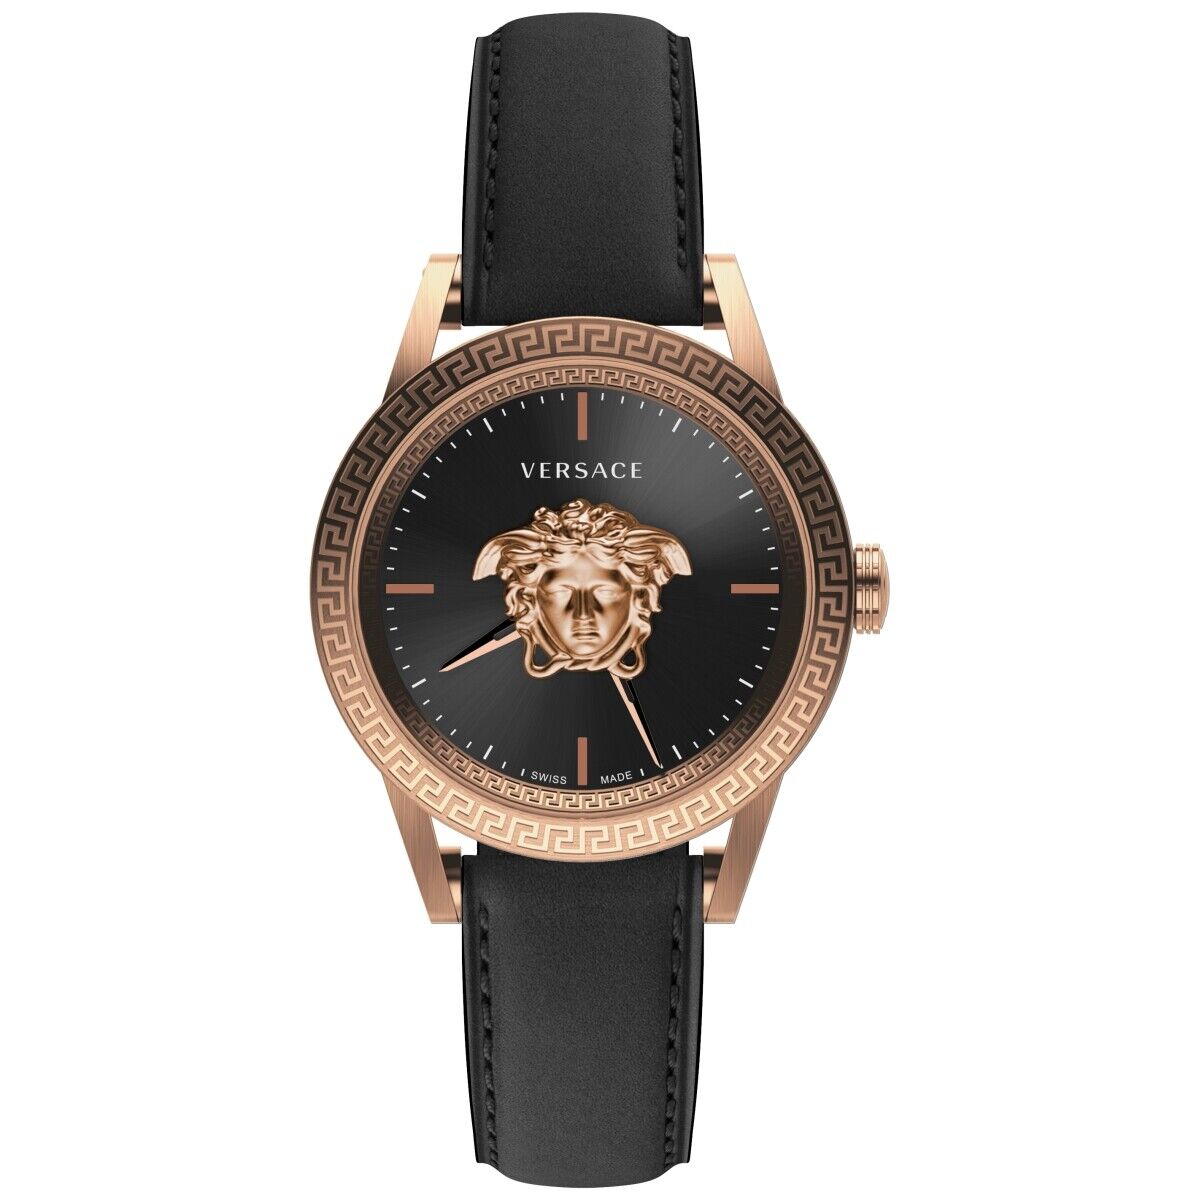 Versace Men's Watch Palazzo Empire 43mm Black Rose Gold VERD01420